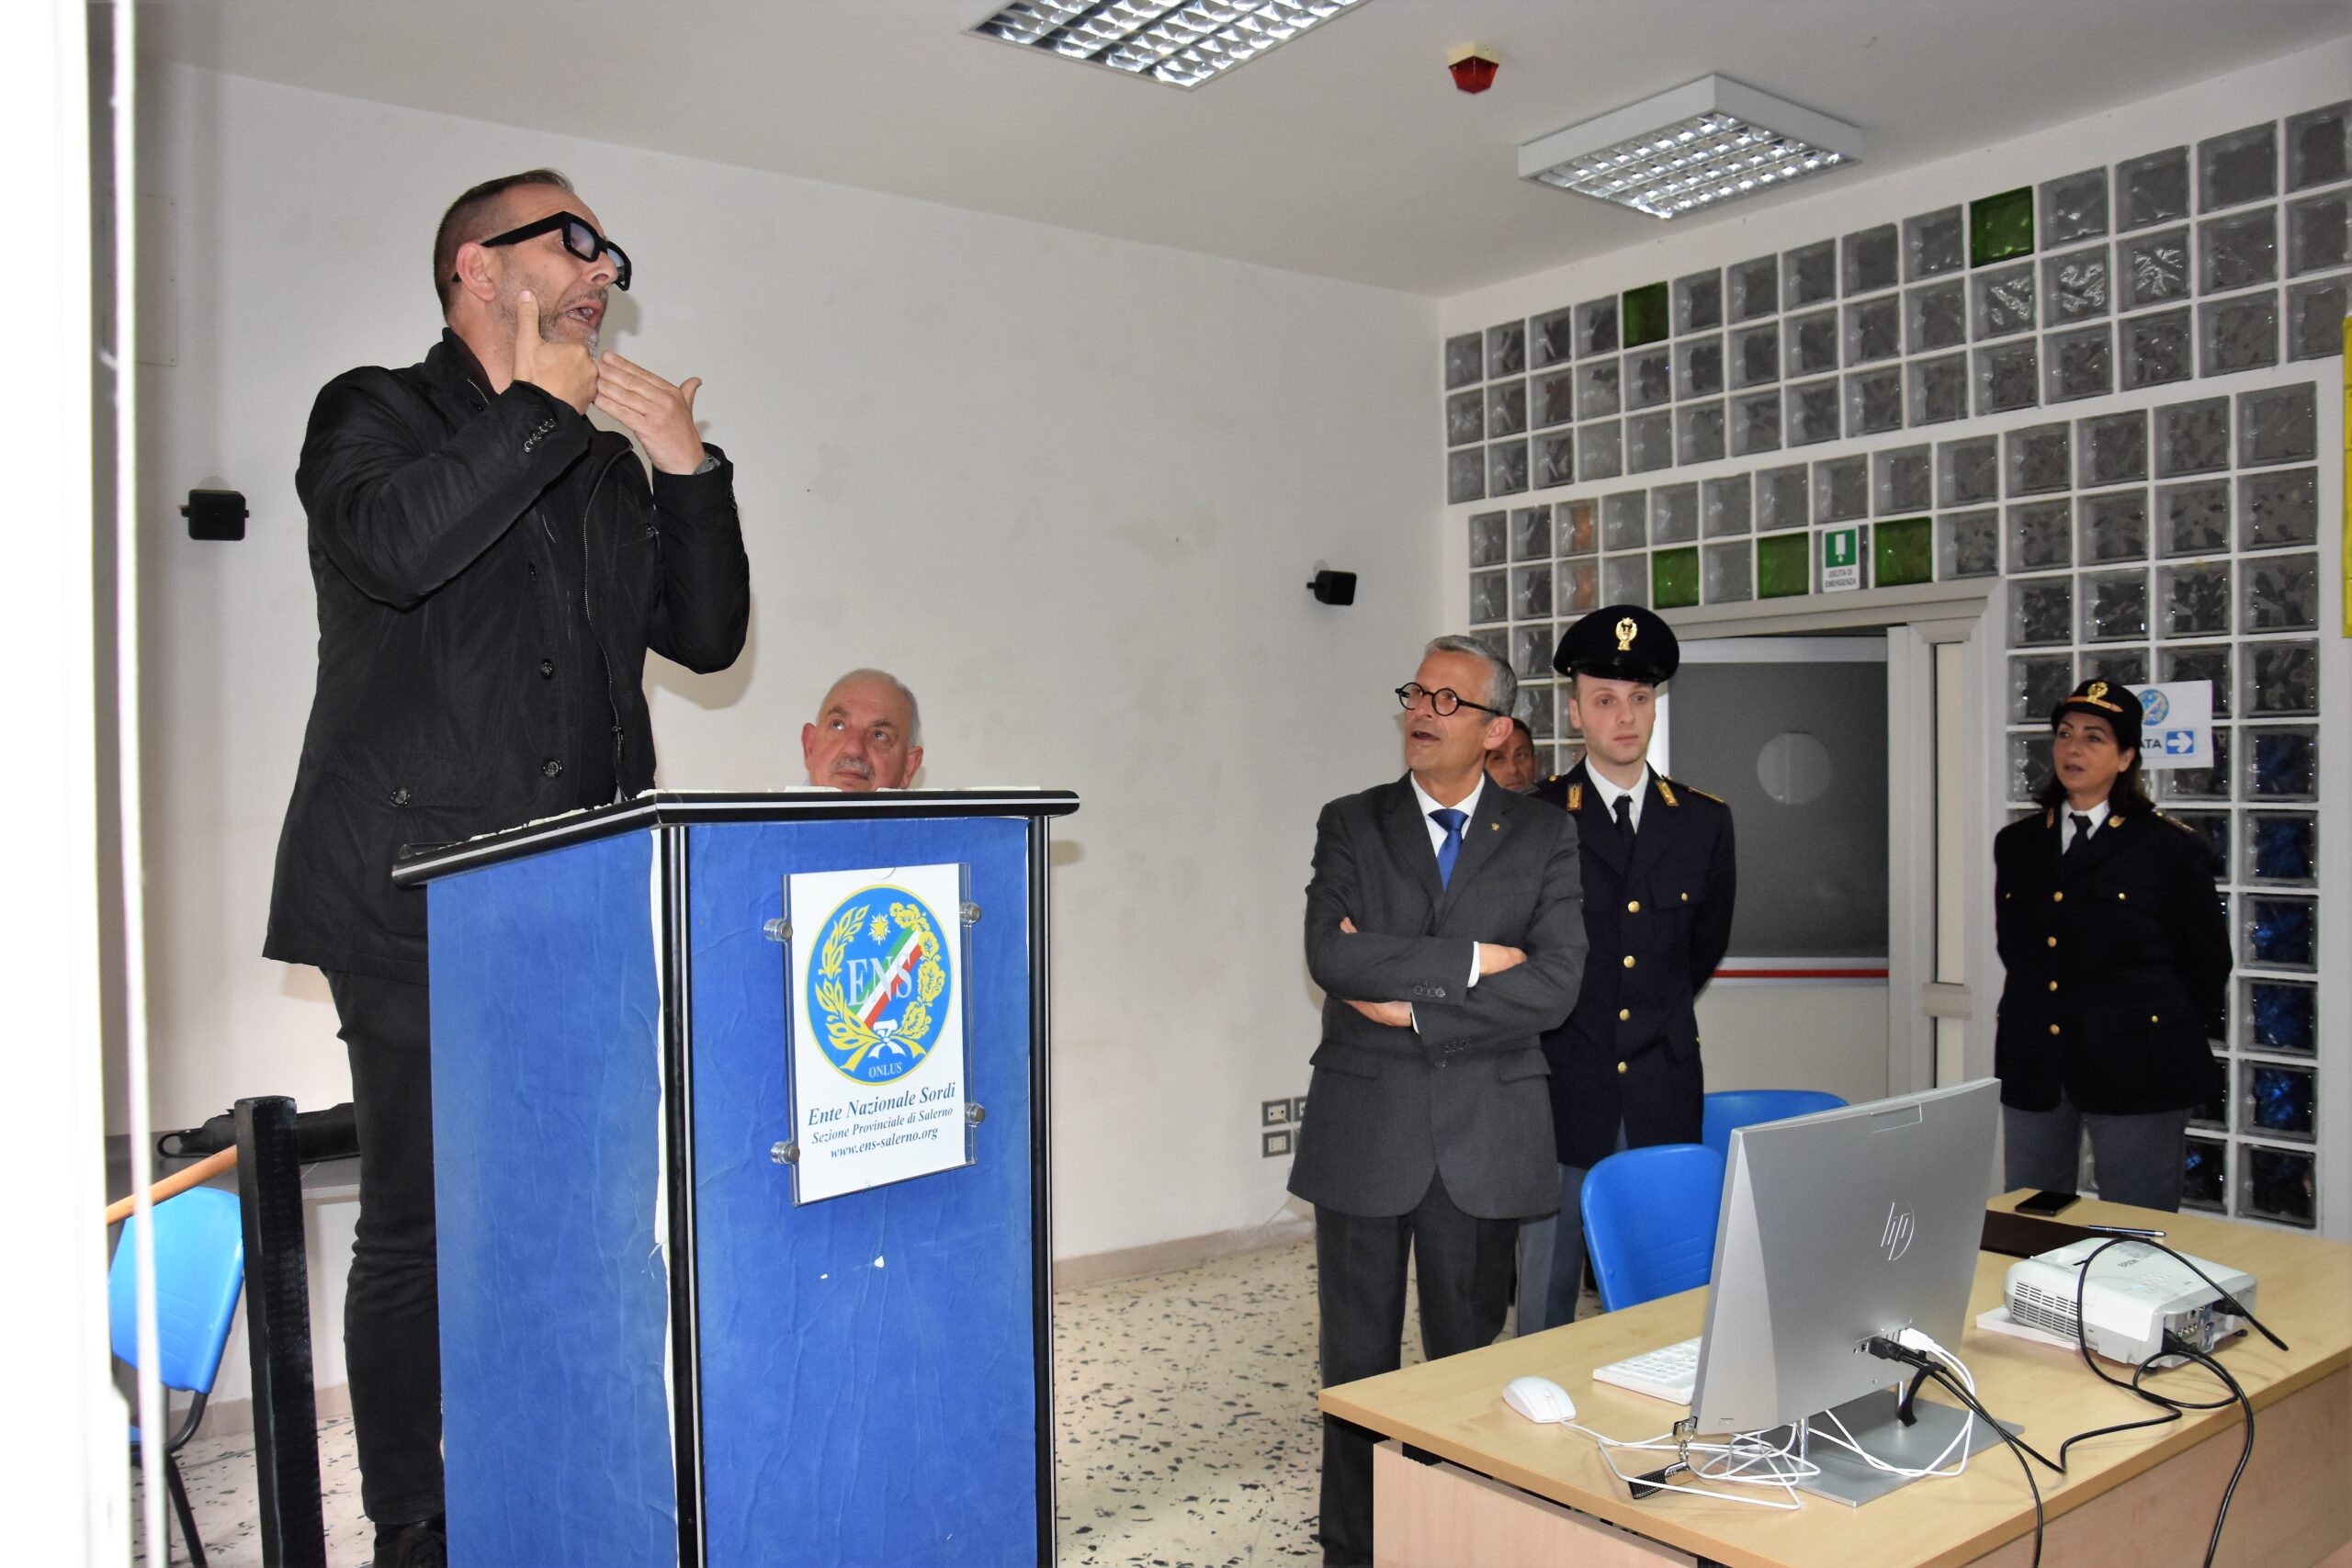 Salerno: Polizia di Stato, applicazione YouPol ad Ente Nazionale Sordi  